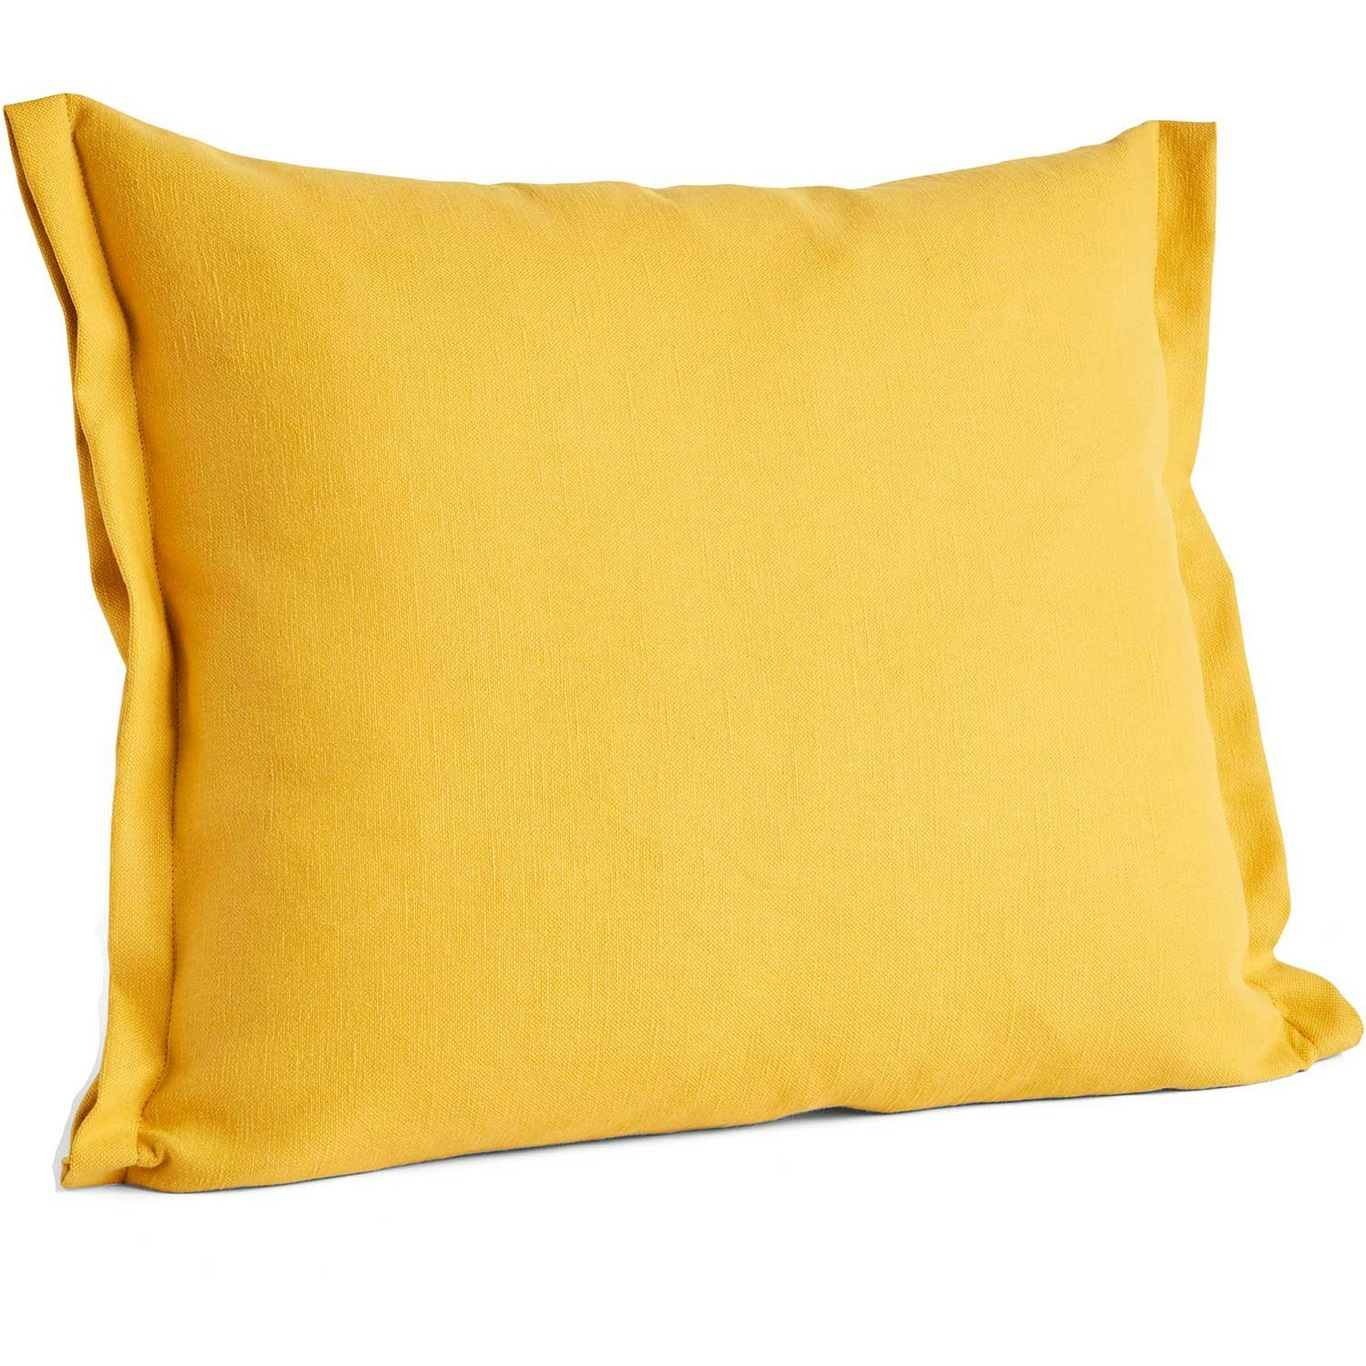 Plica Planar Cushion 55x60 cm, Warm Yellow